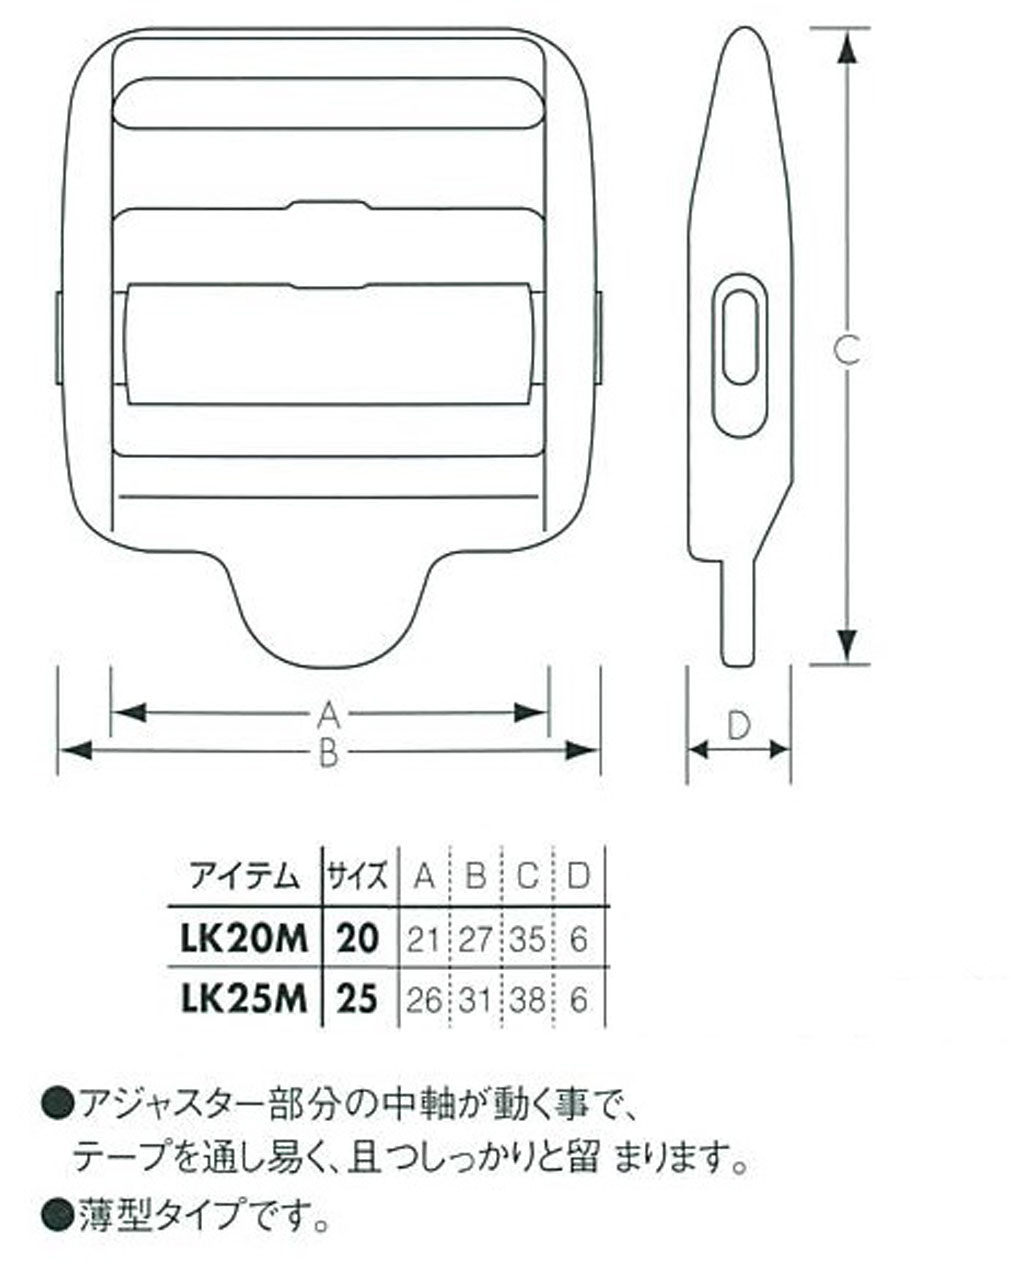 YKK テープ コキ Strap adjuster 薄型タイプ 20mm 25mm LK-M[アジャスター] YKK(プラパーツ)/島田商事  Trim-park SHIMADA アパレル・服飾資材 B to B通販